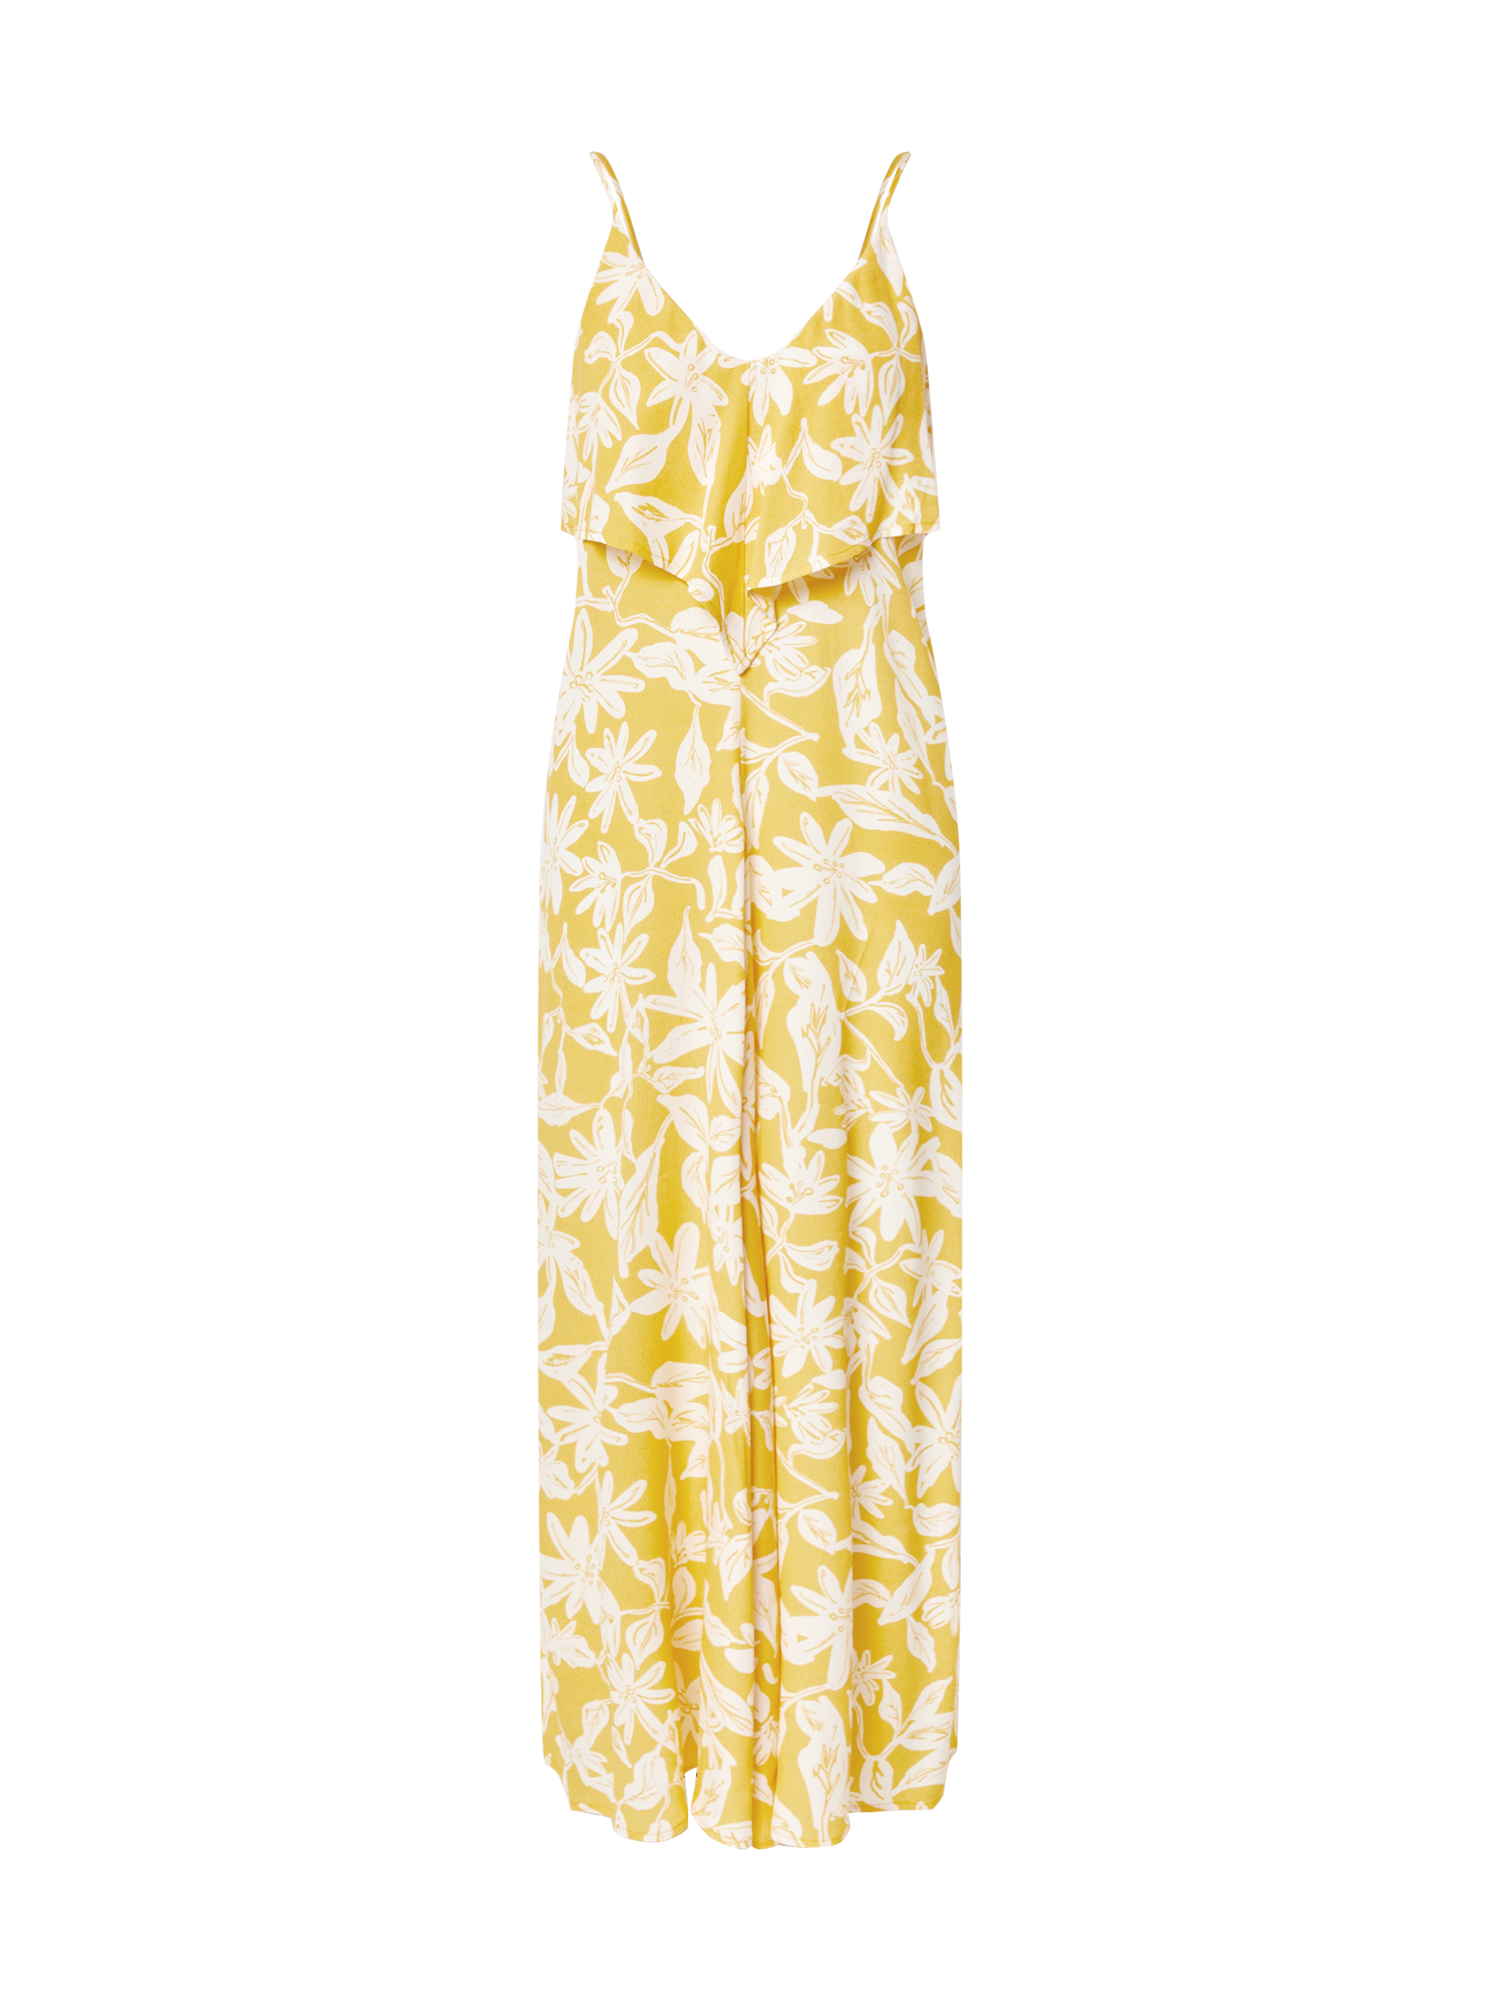 Odzież Kobiety Guido Maria Kretschmer Collection Sukienka Christina w kolorze Żółtym 